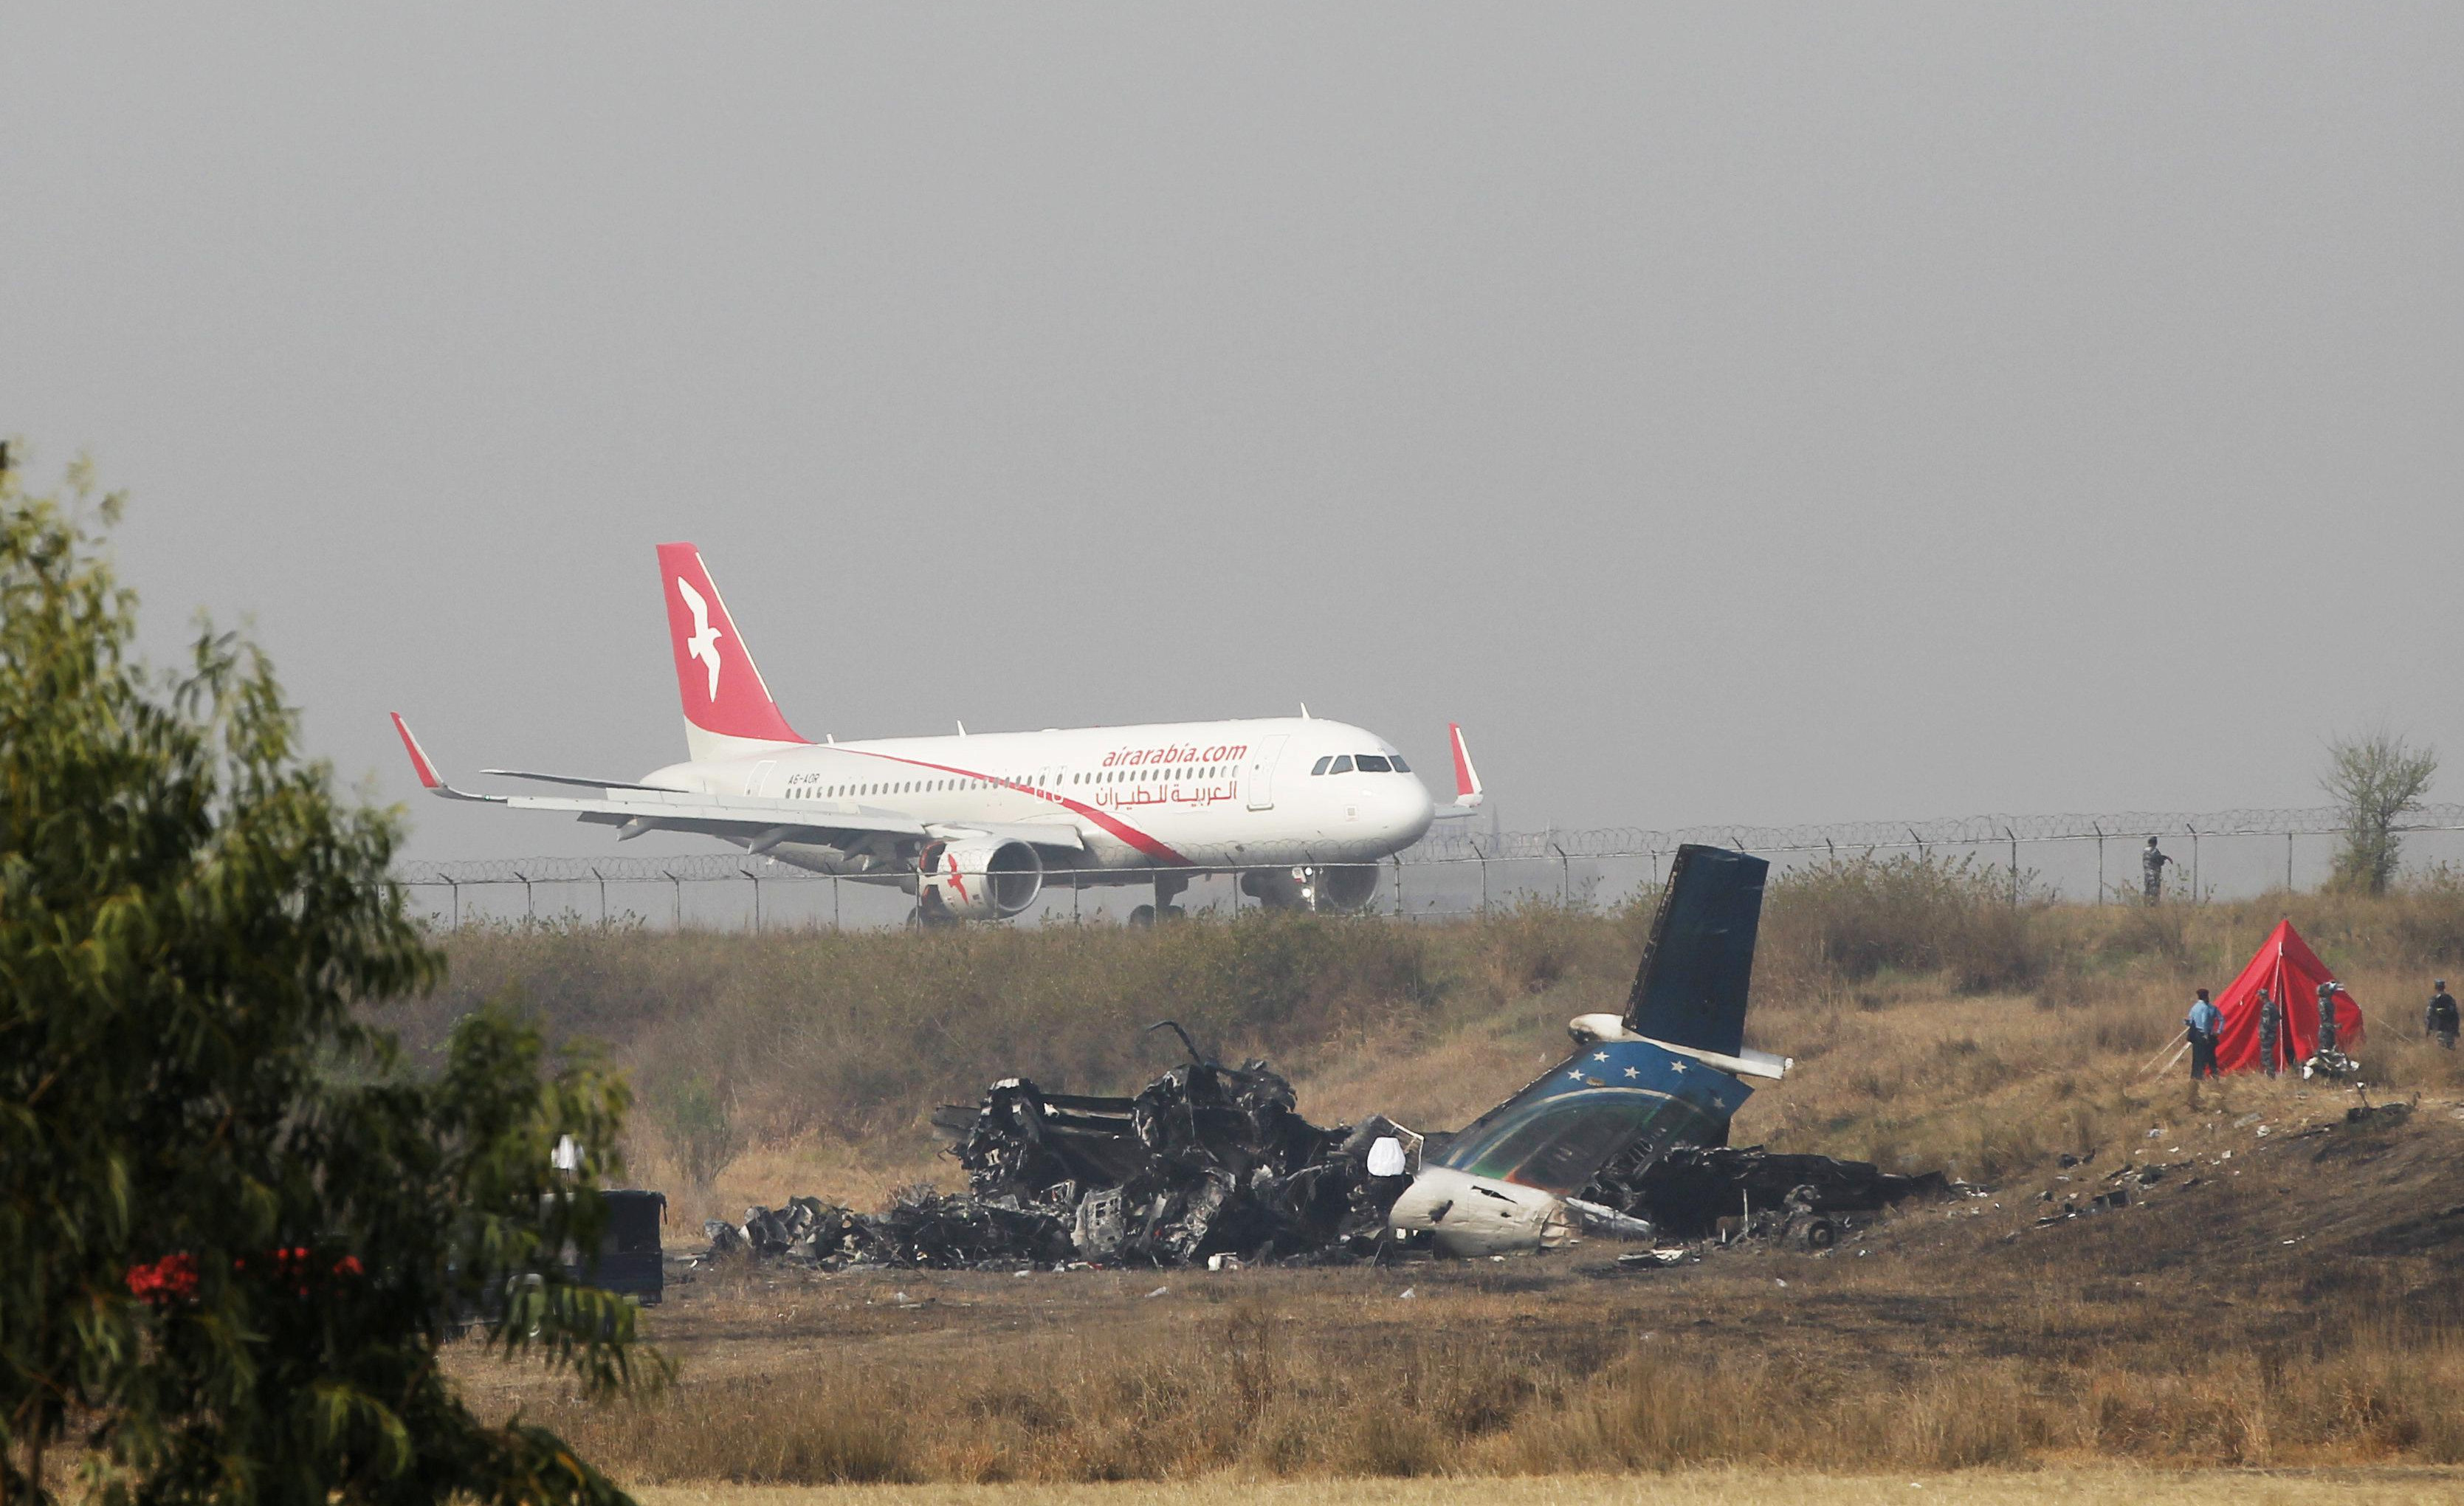 GREŠKA PILOTA? Avion koji se srušio u Nepalu, prilazio pisti iz suprotnog smera!